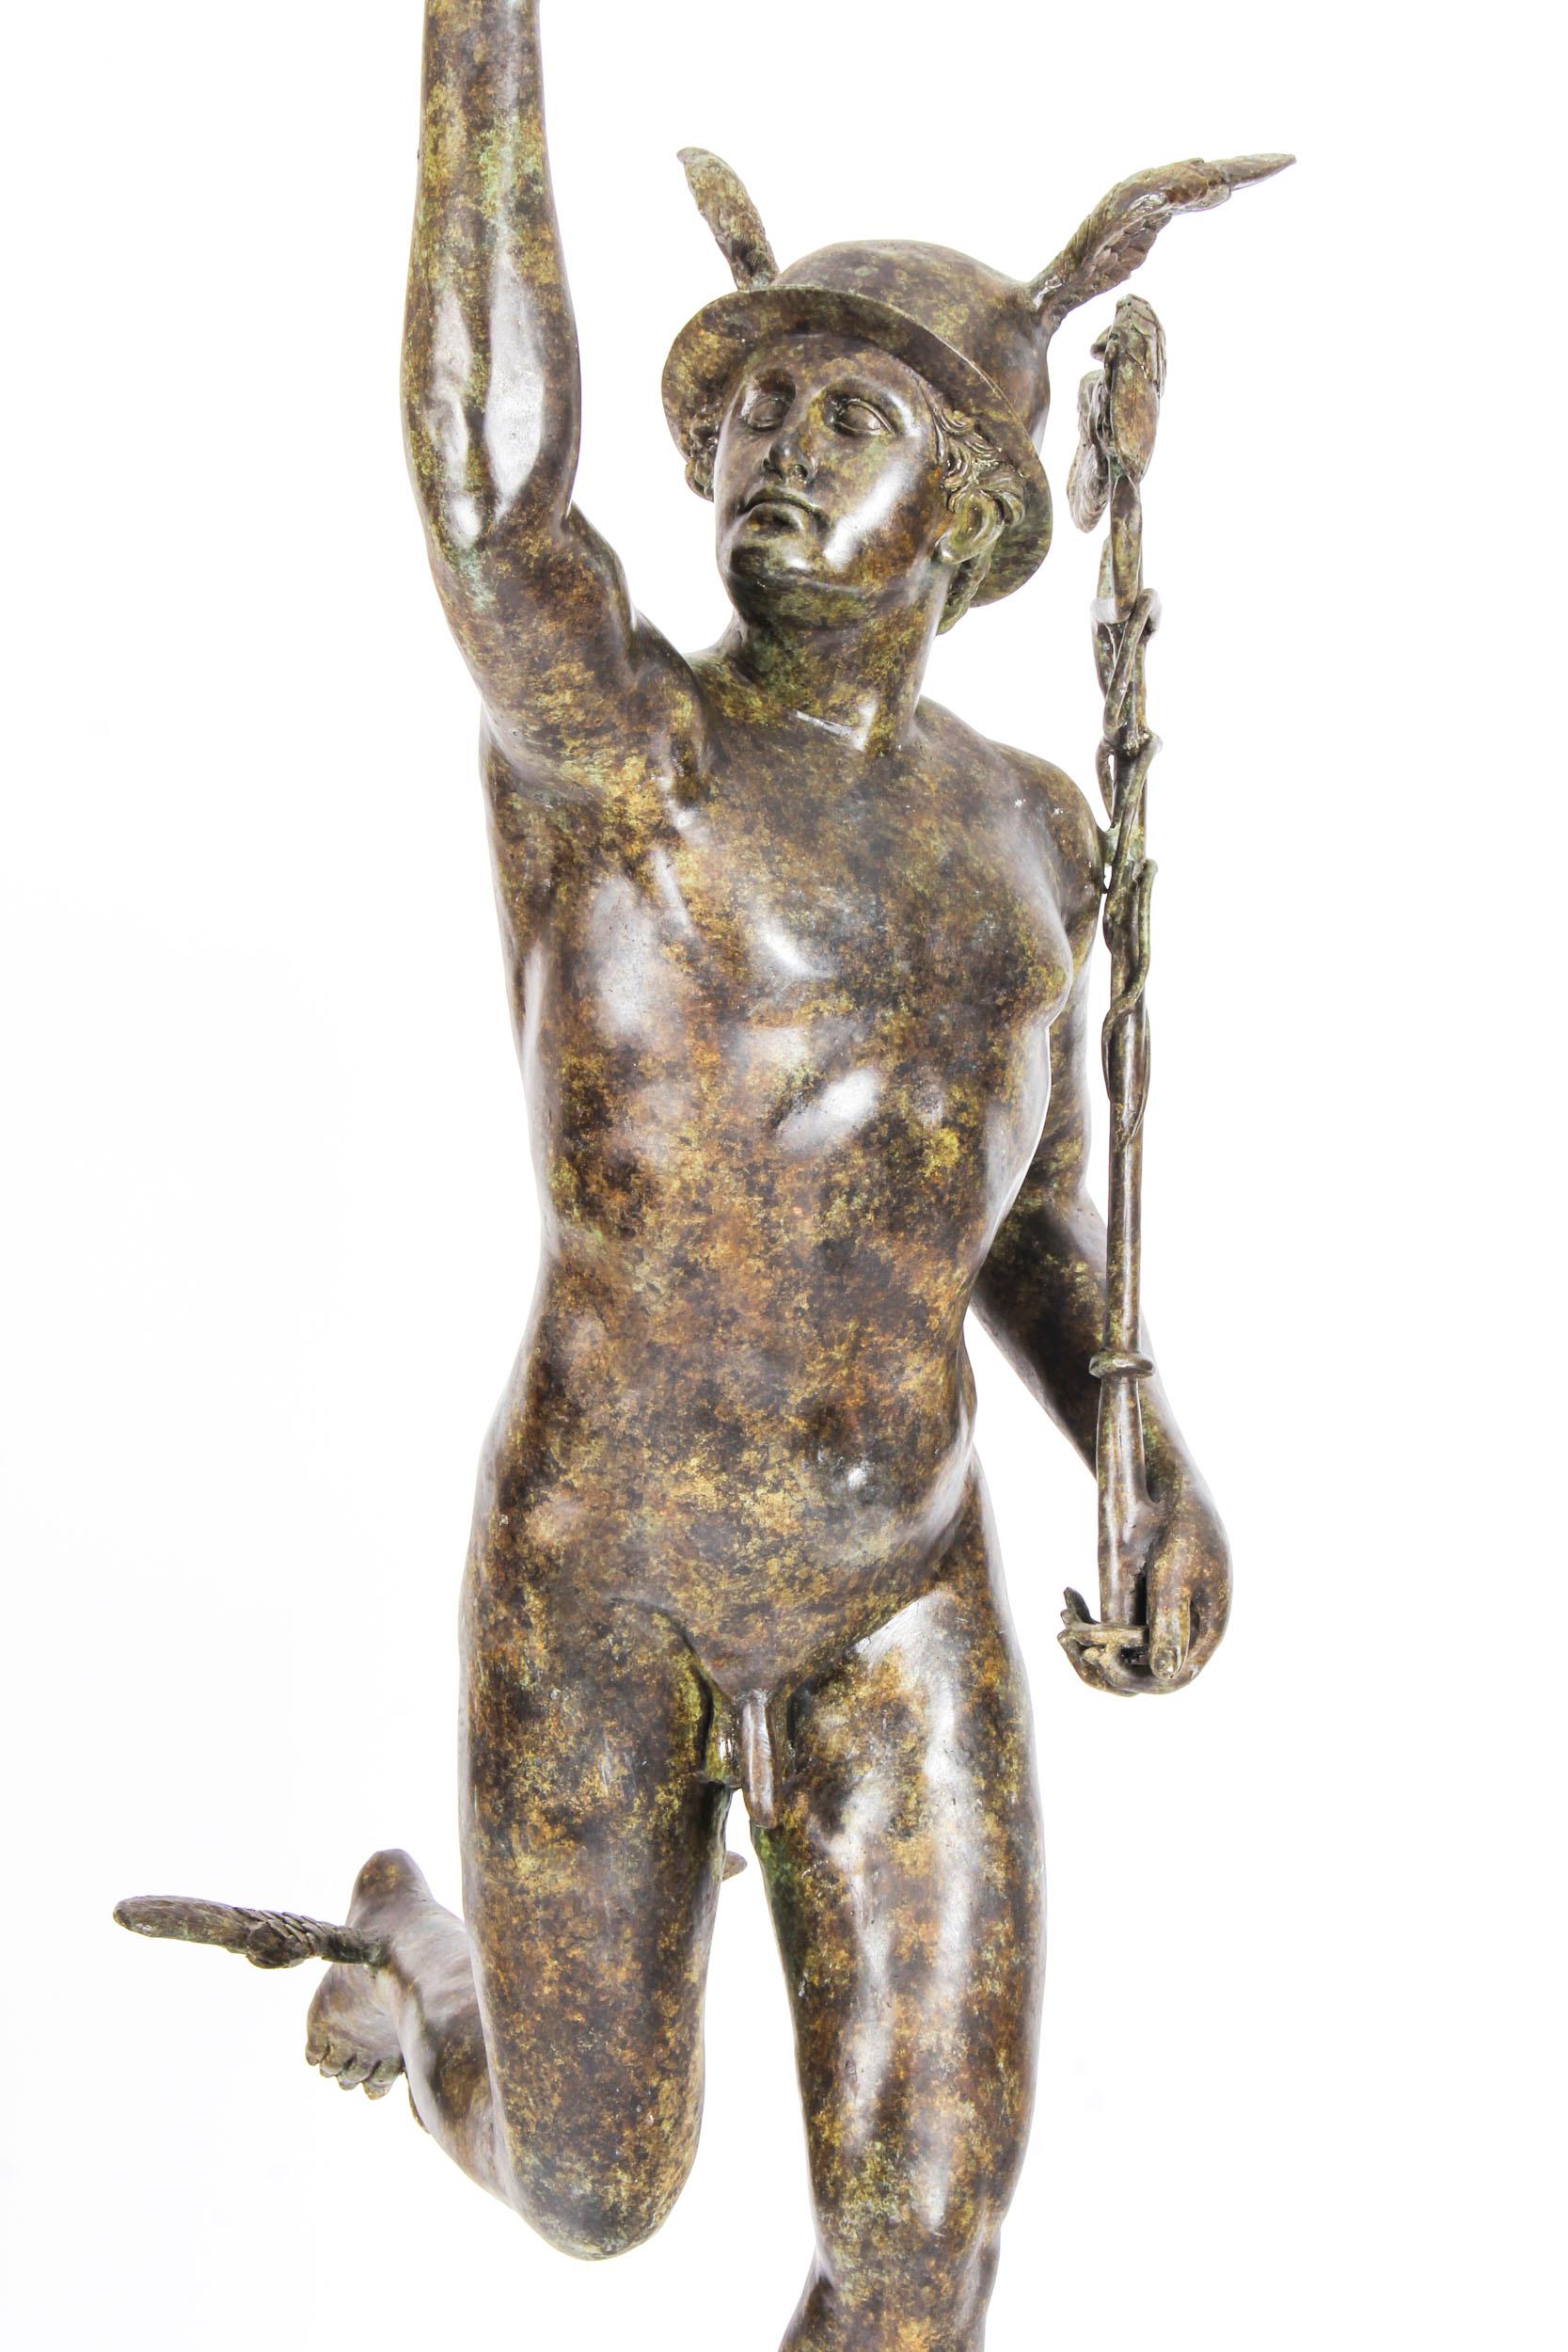 Es handelt sich um eine große und schön detaillierte Bronzeskulptur des Merkur, auch bekannt als Hermes, aus der zweiten Hälfte des 20.

Merkur ist wunderschön mit einer auffälligen Grünspanpatina dargestellt und steht auf einem Windstoß, der aus